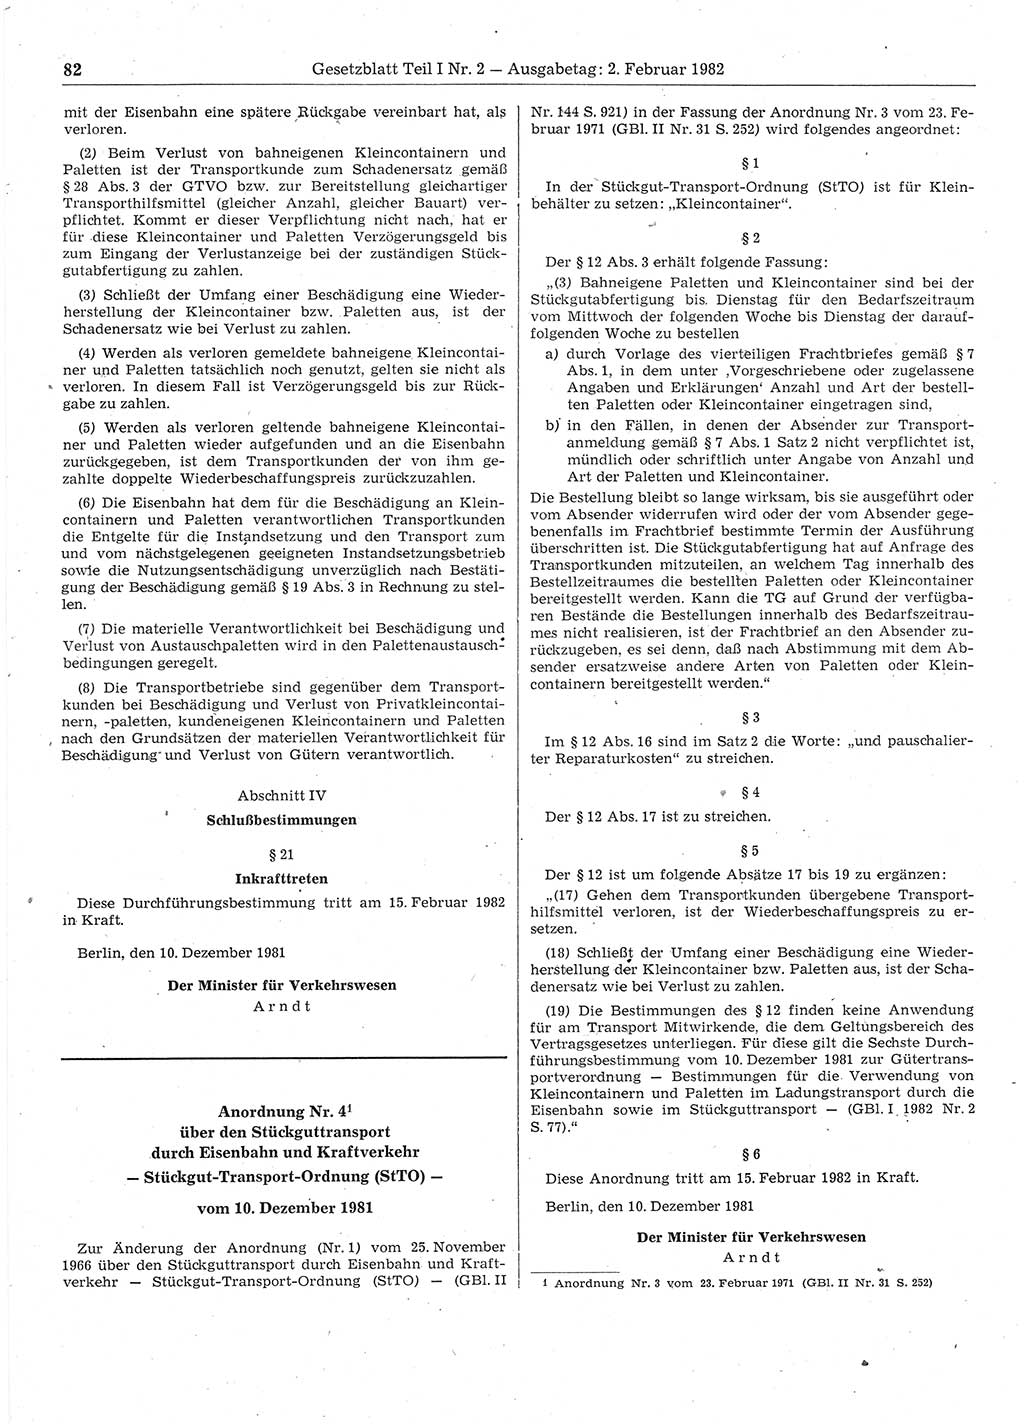 Gesetzblatt (GBl.) der Deutschen Demokratischen Republik (DDR) Teil Ⅰ 1982, Seite 82 (GBl. DDR Ⅰ 1982, S. 82)